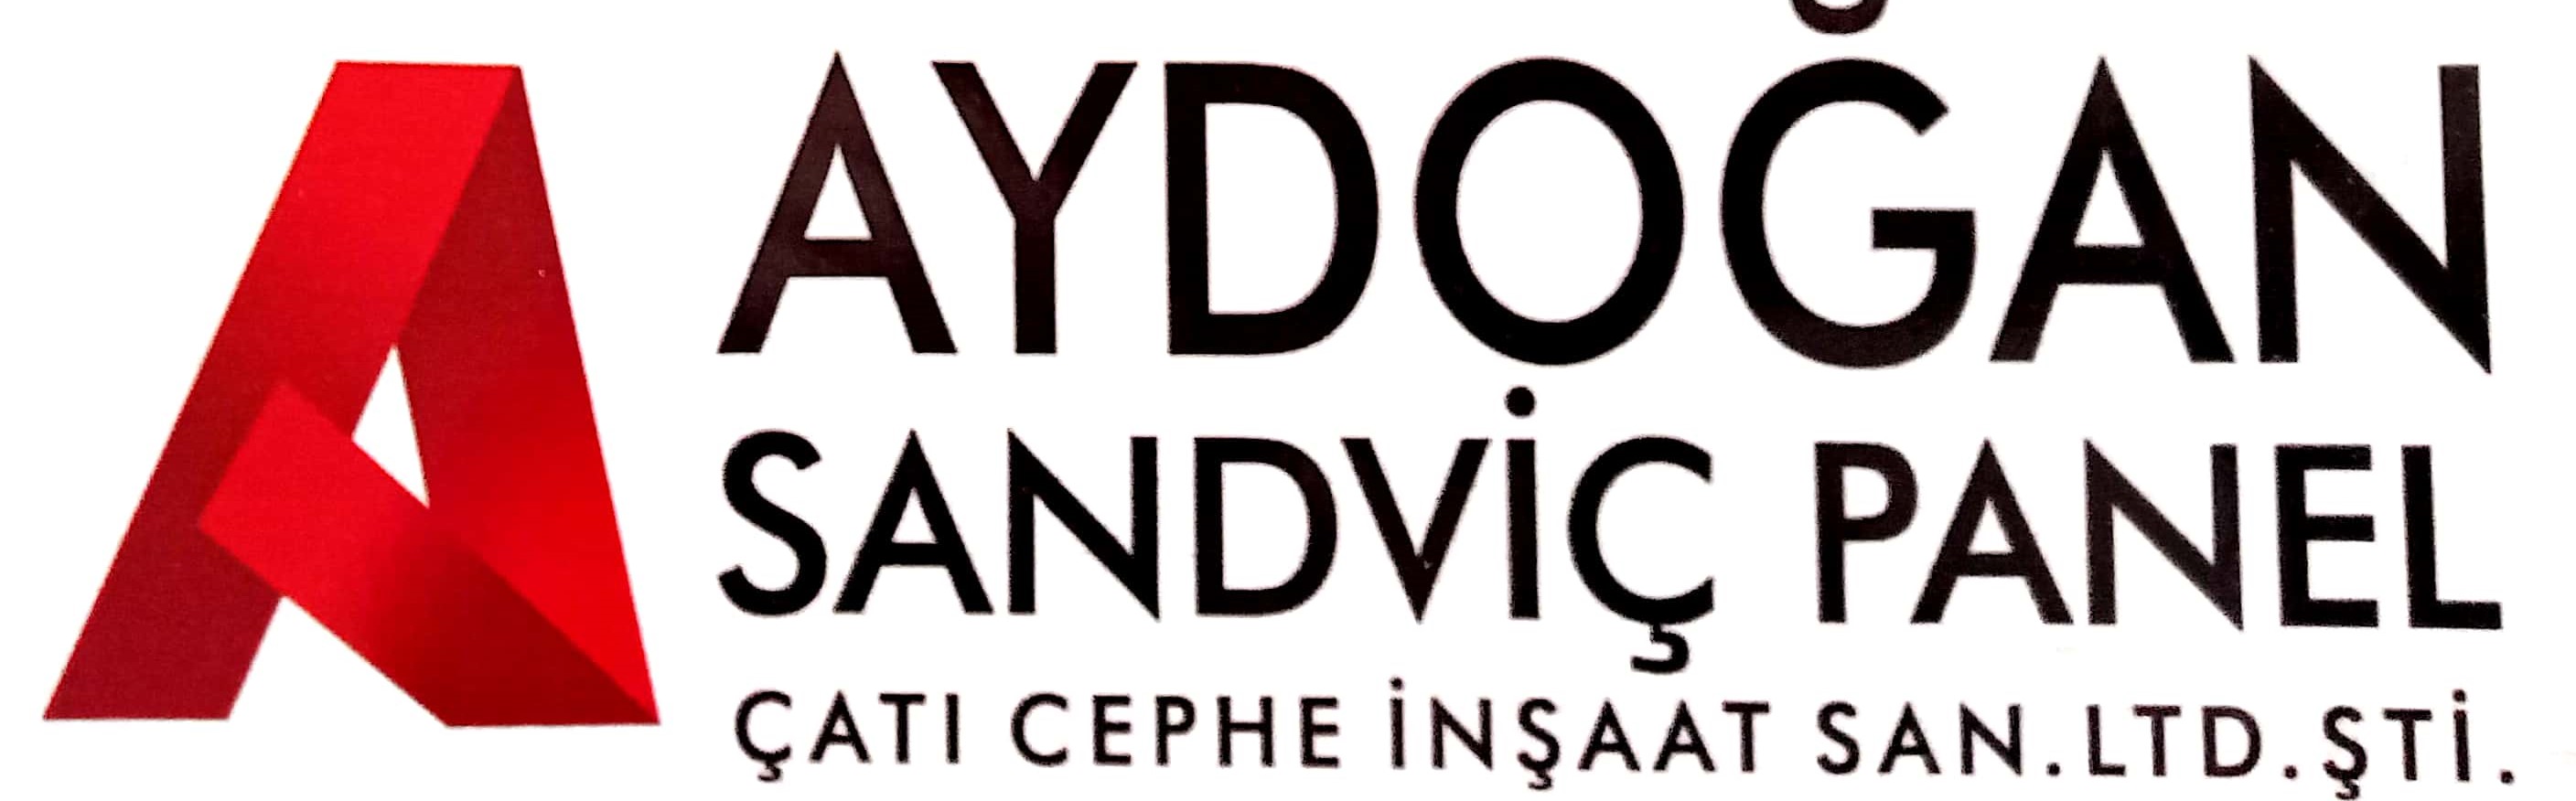 Firma Logo